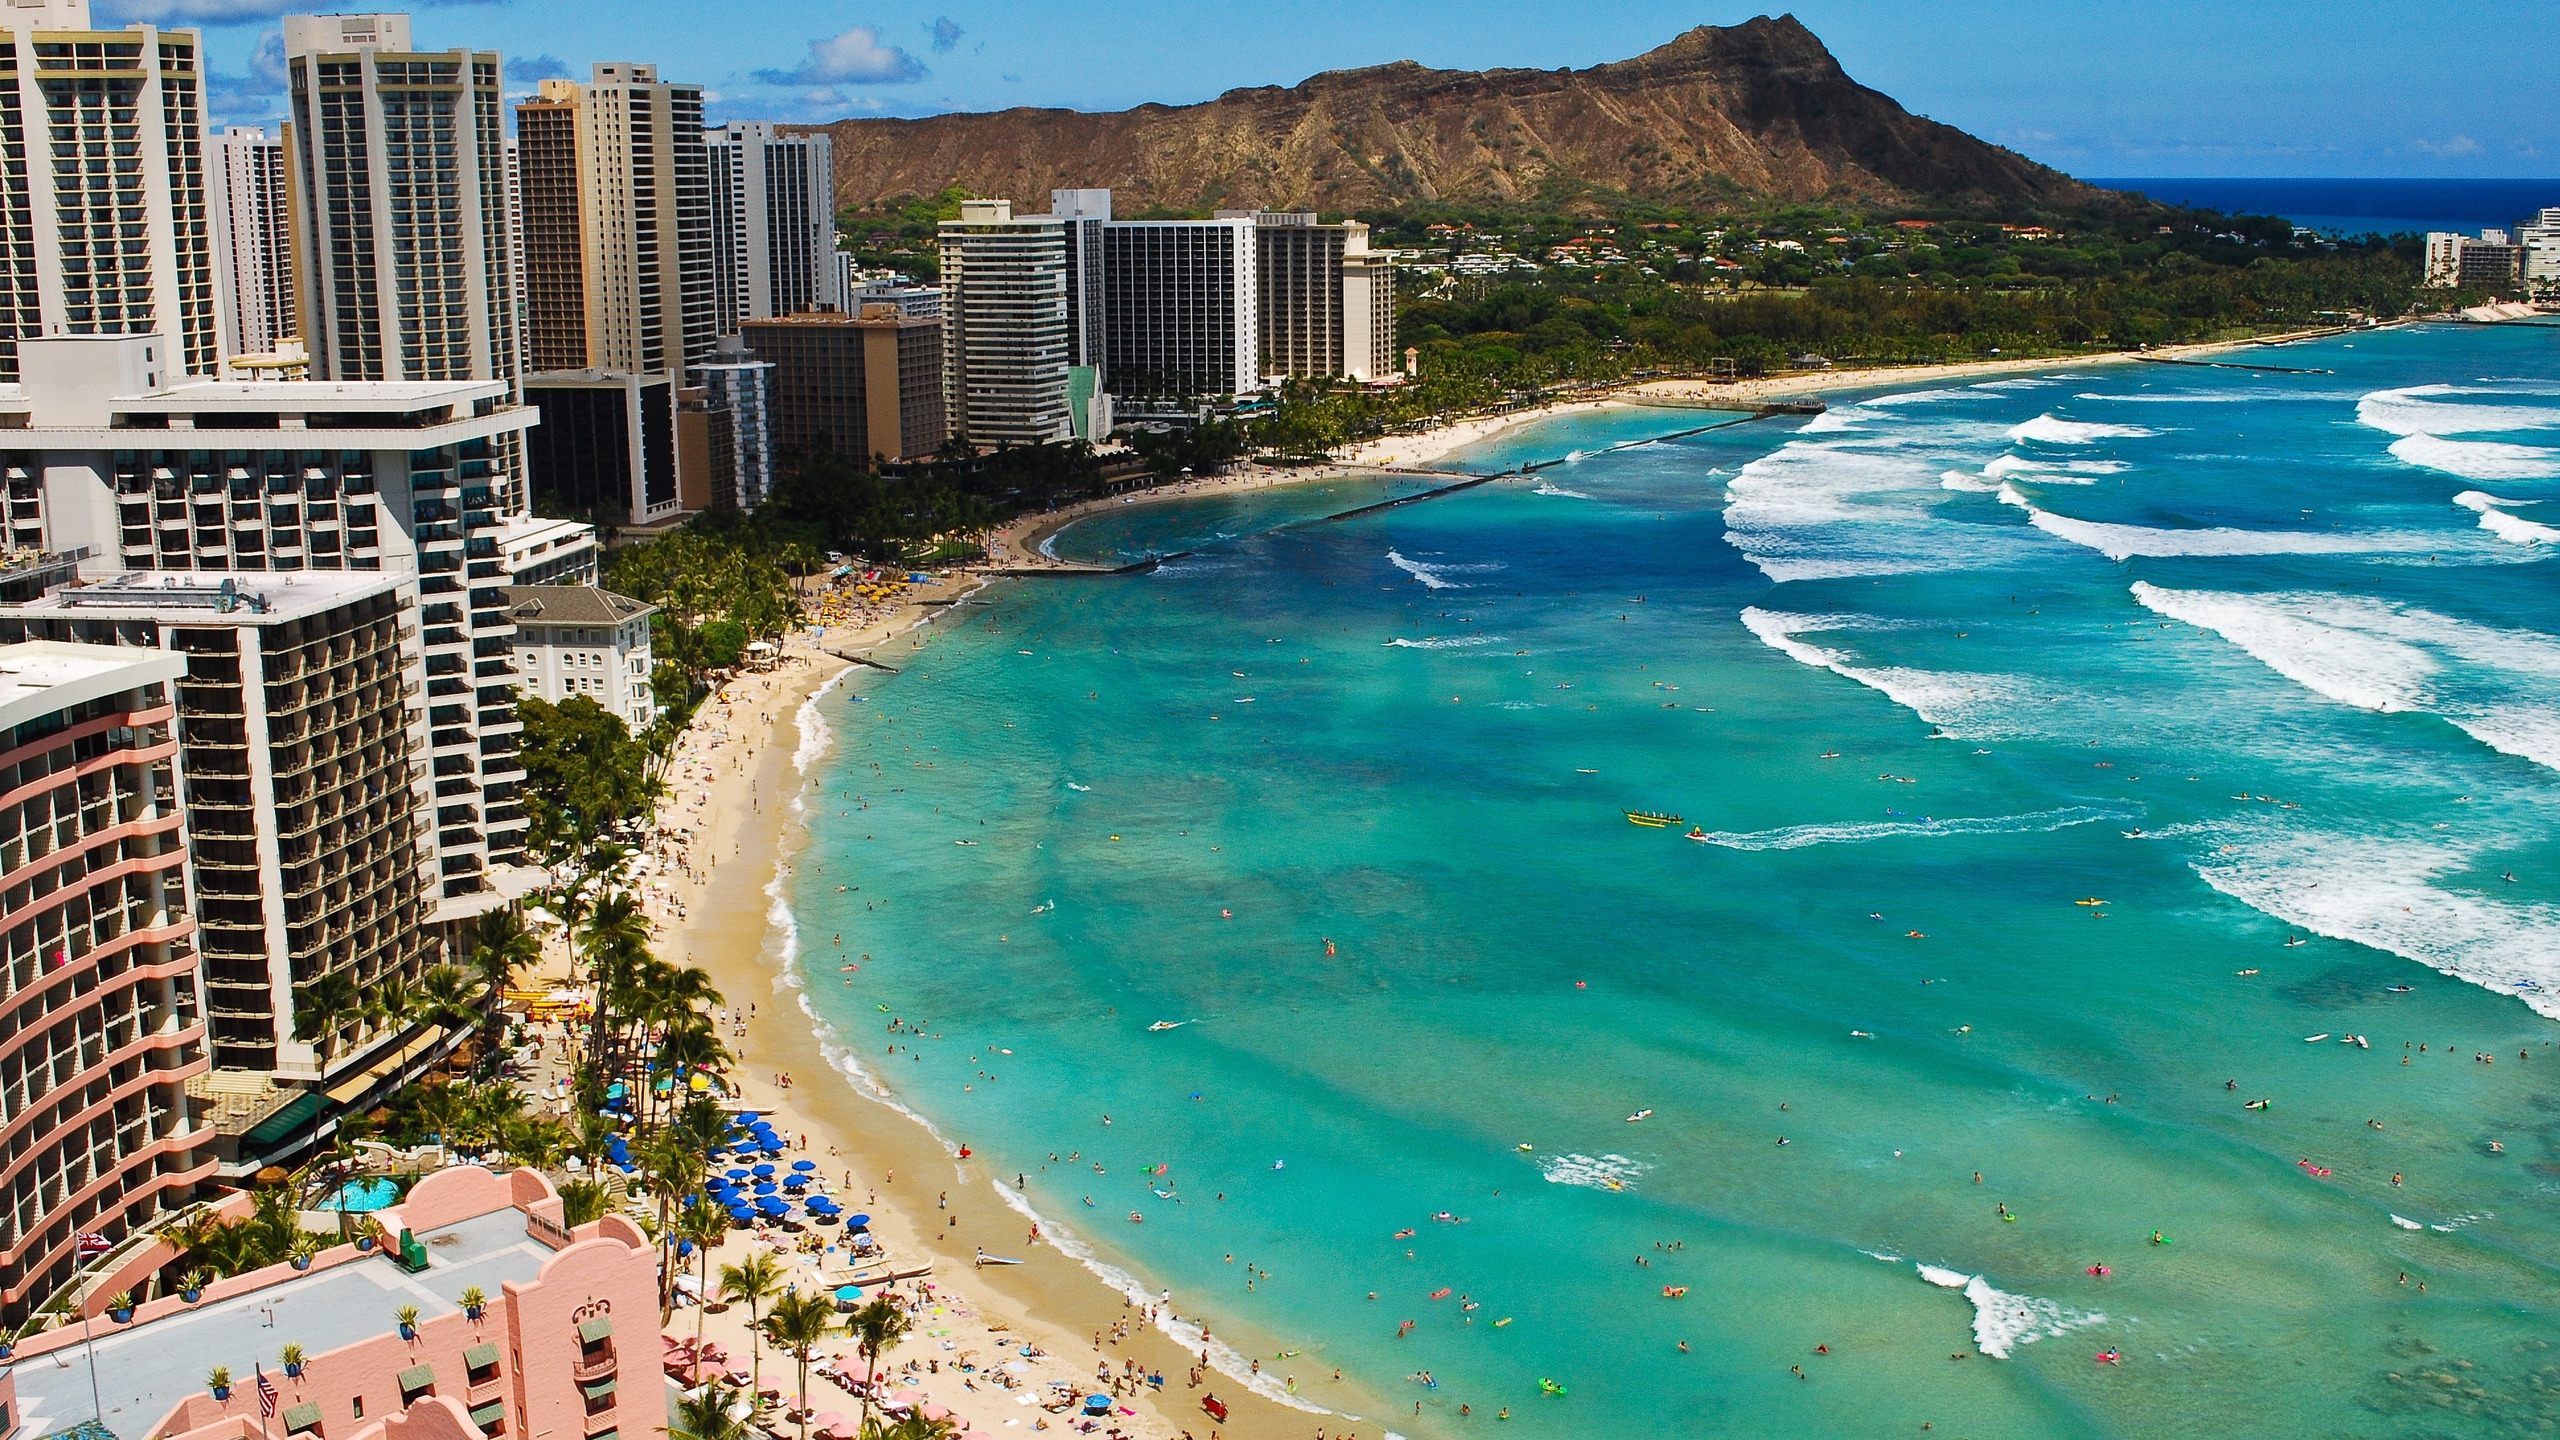 Waikiki Beach Hawaii, for 2560x1440 HDTV resolution